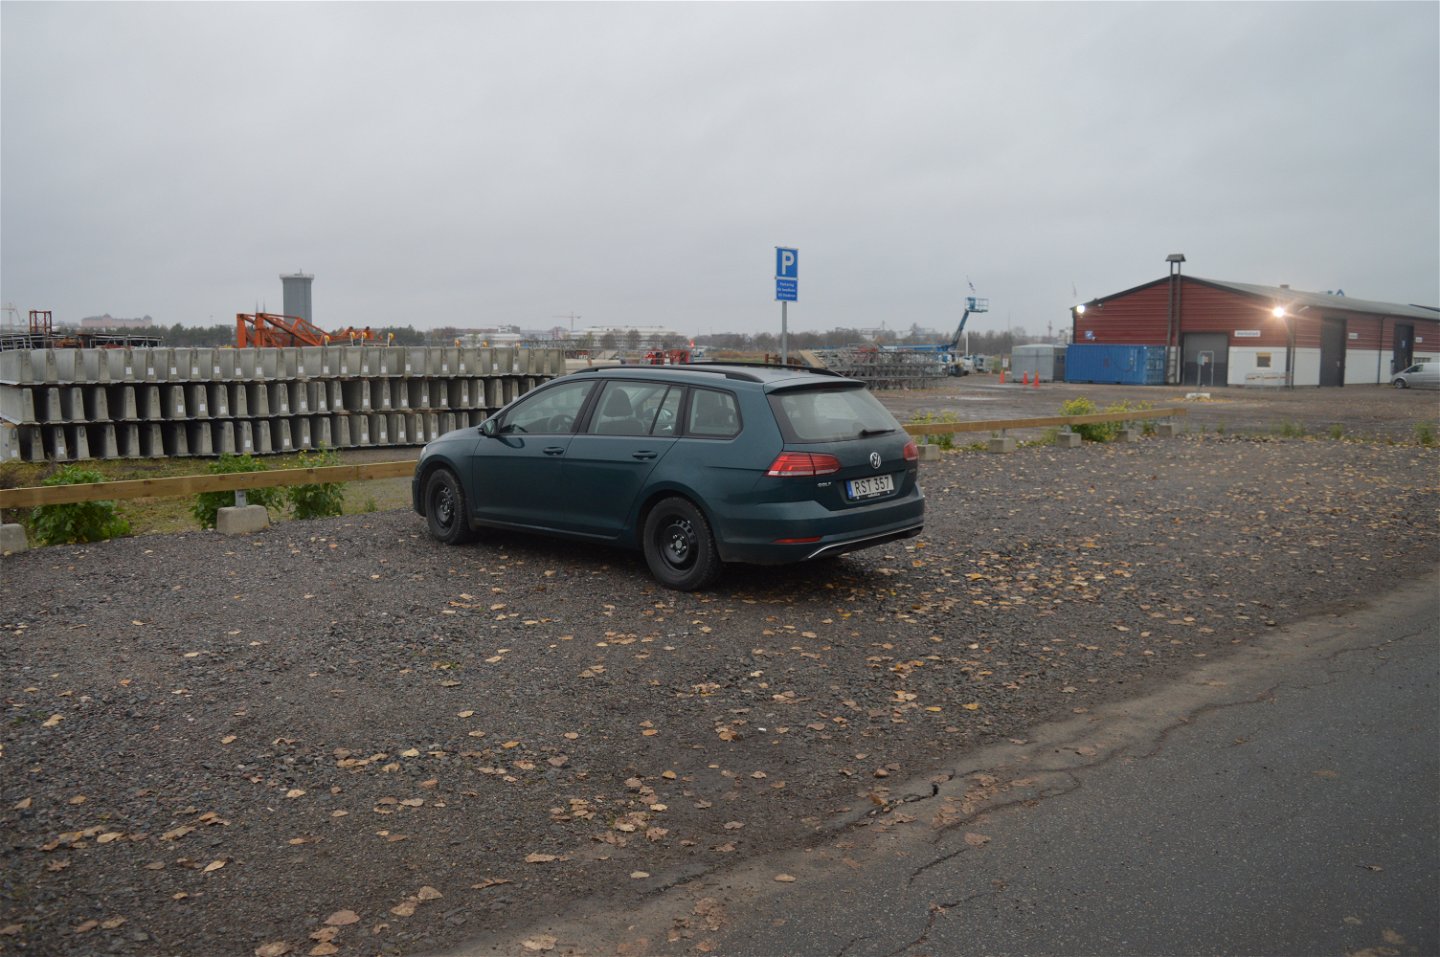 Vid en asfalterad väg finns en grusad parkeringsplats. En bil står på parkeringsplatsen.